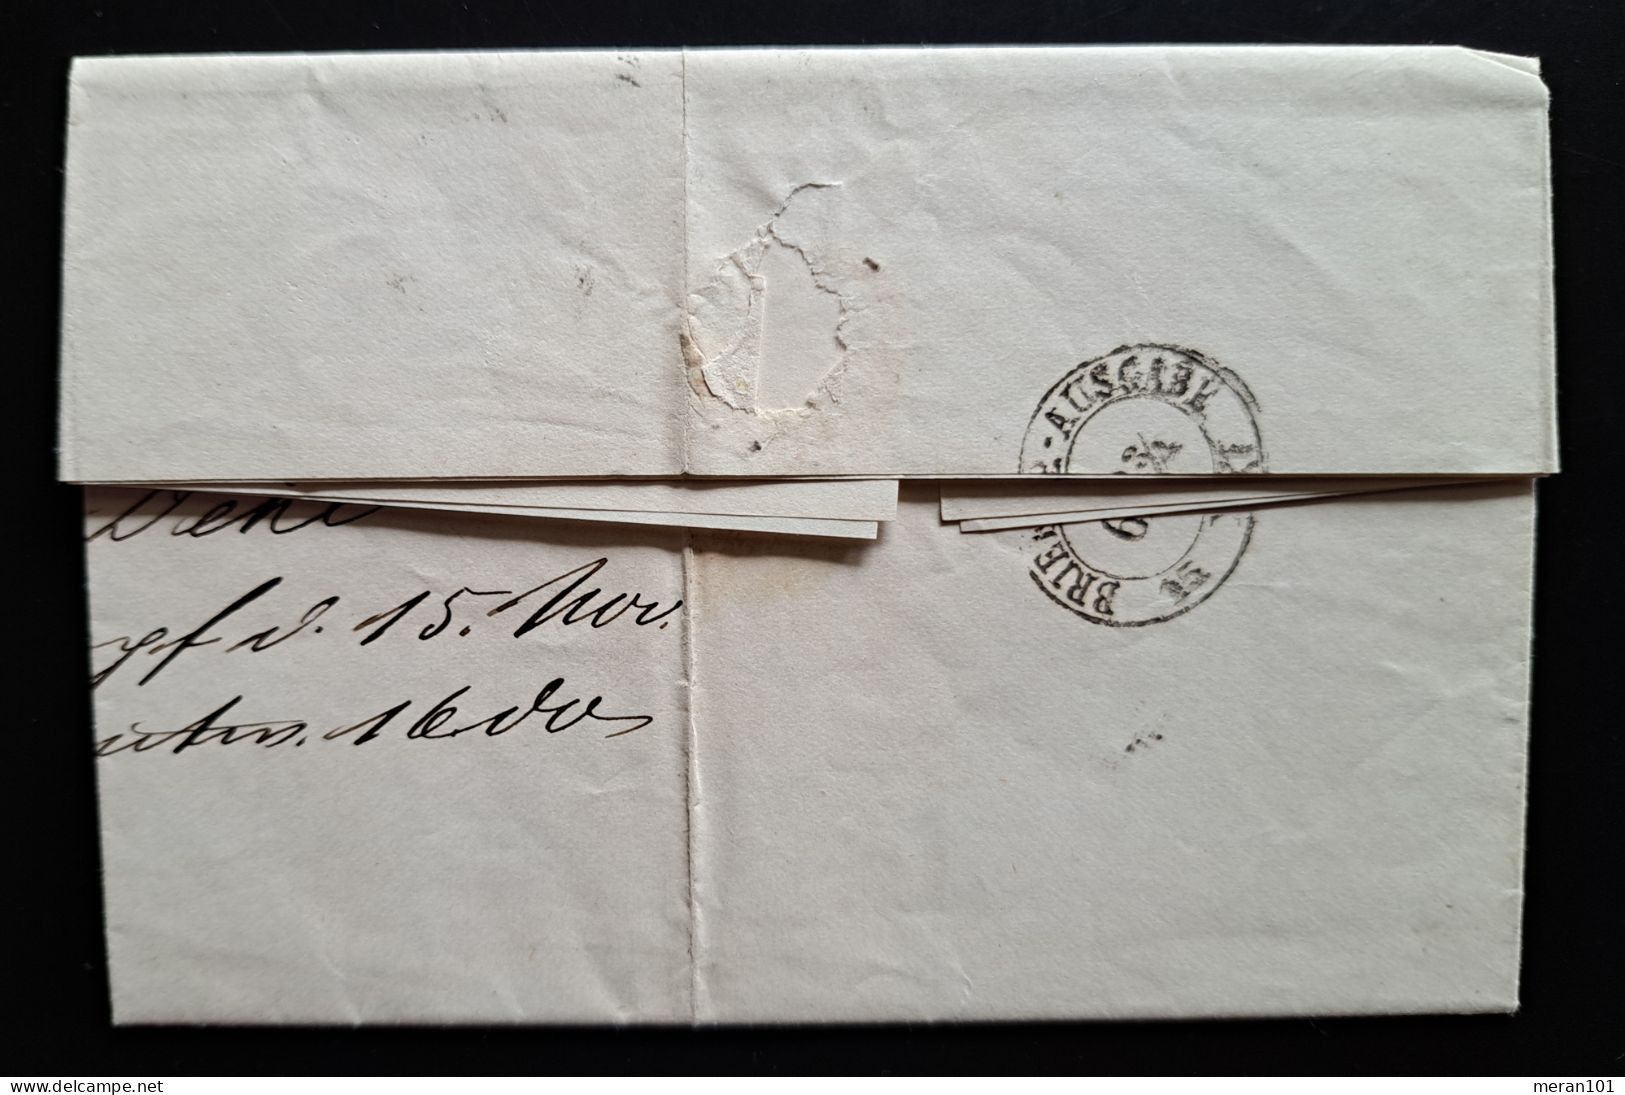 Preussen 1867, Brief Mit Inhalt NAZZA Nach Dresden, Mi 18b - Covers & Documents